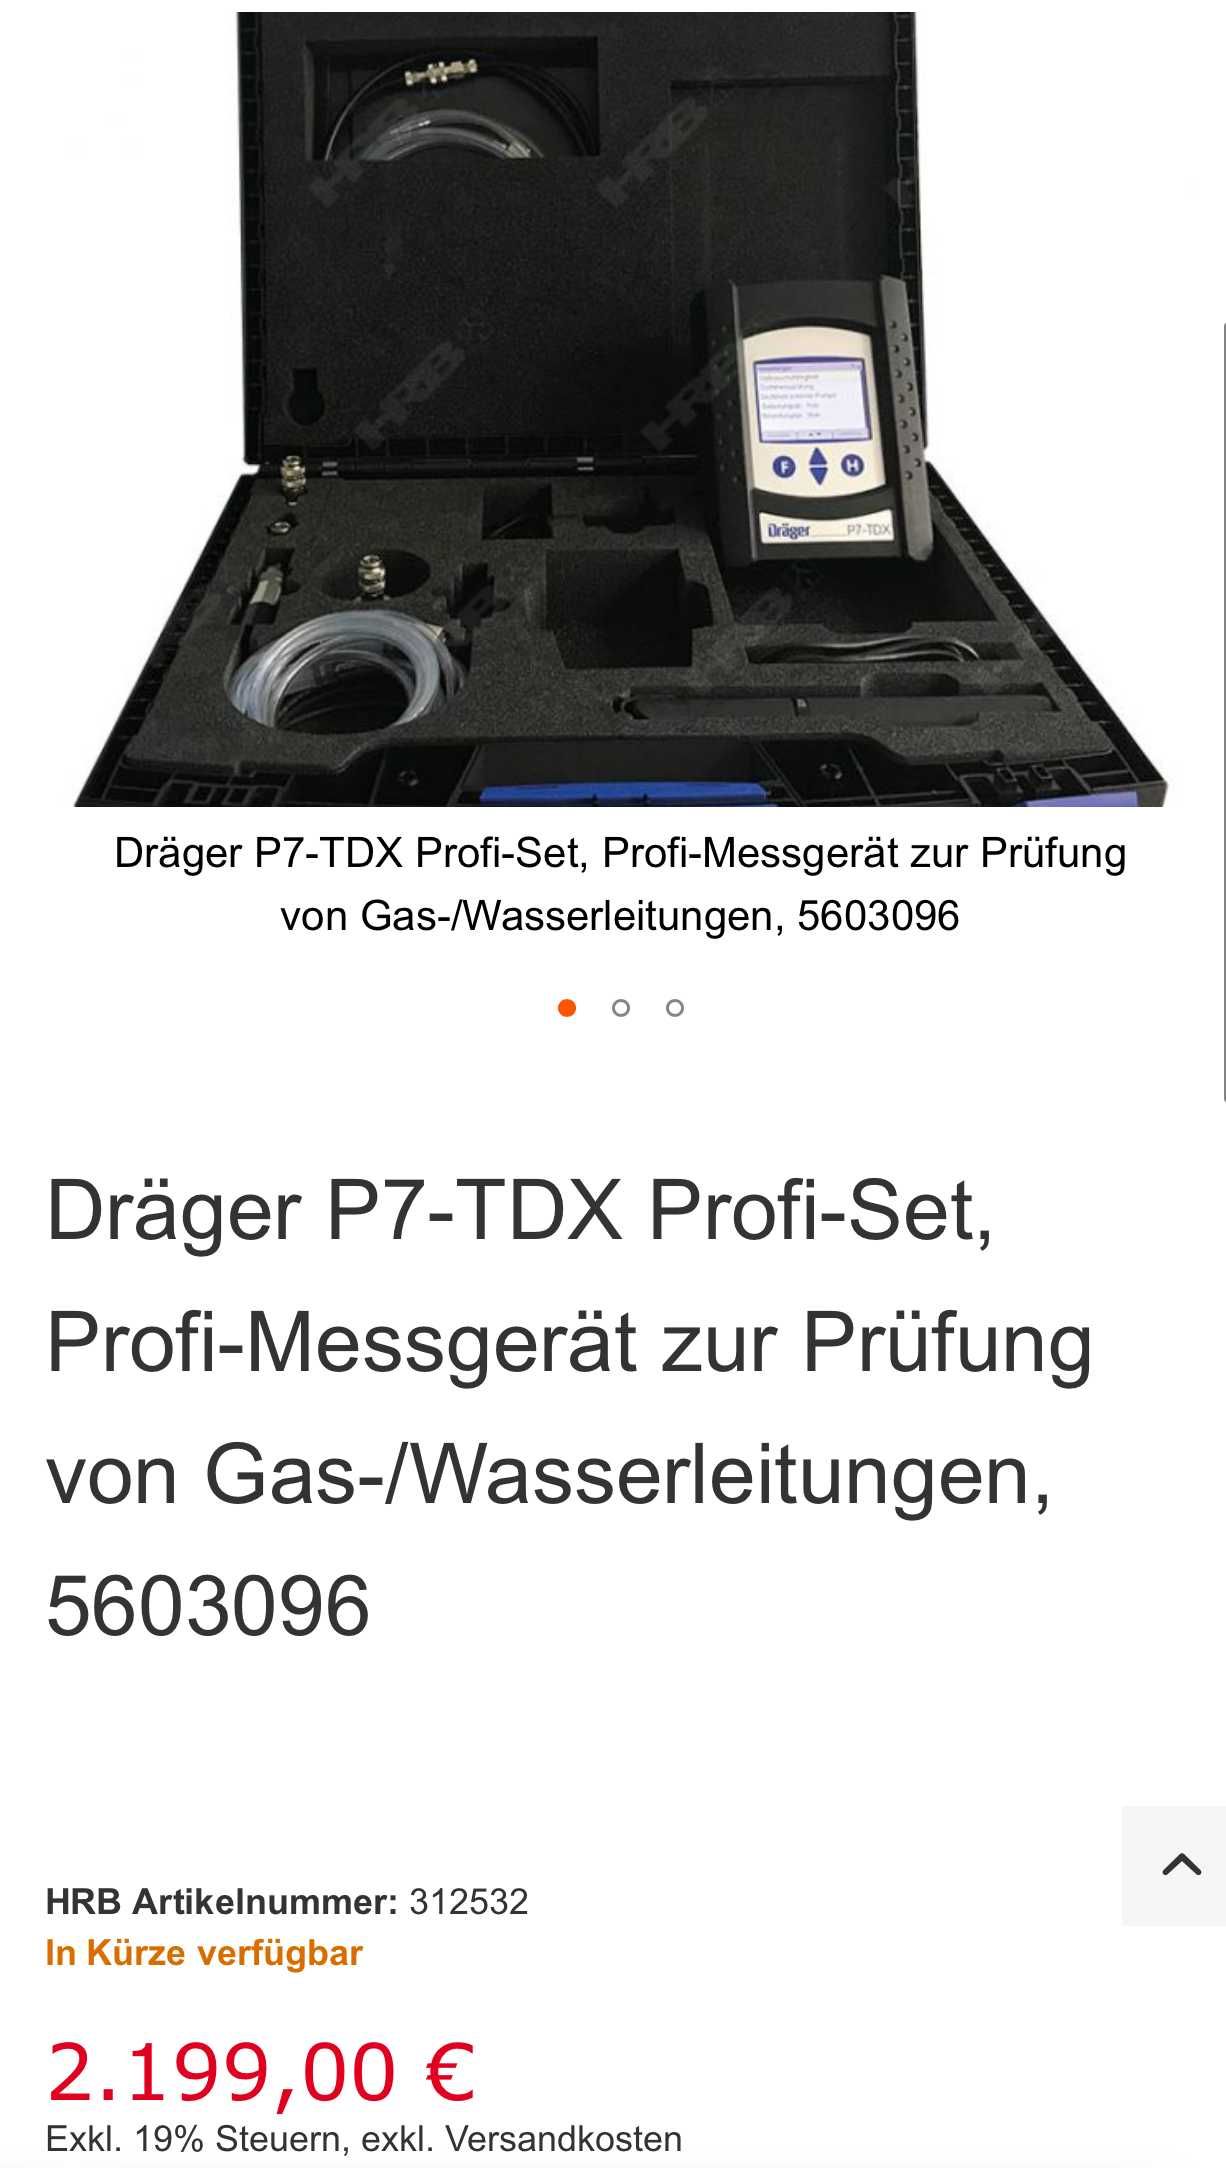 Професионален измервателен уред - Dräger P7-TDX